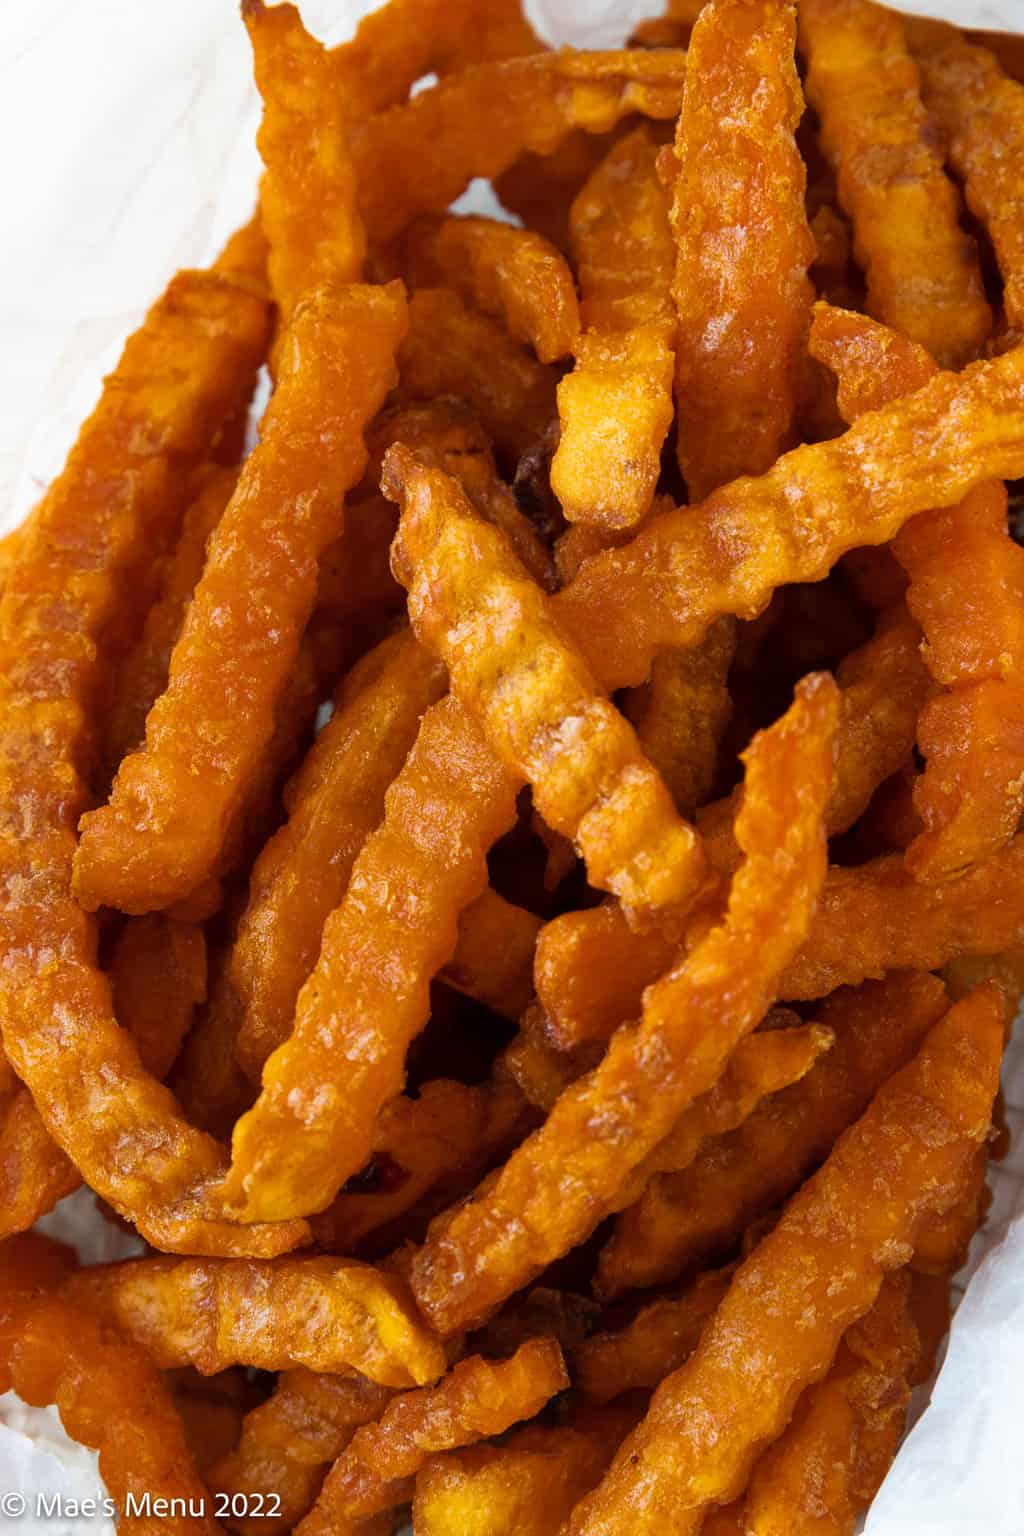 An up-close overhead shot of a basket of sweet potato fries.